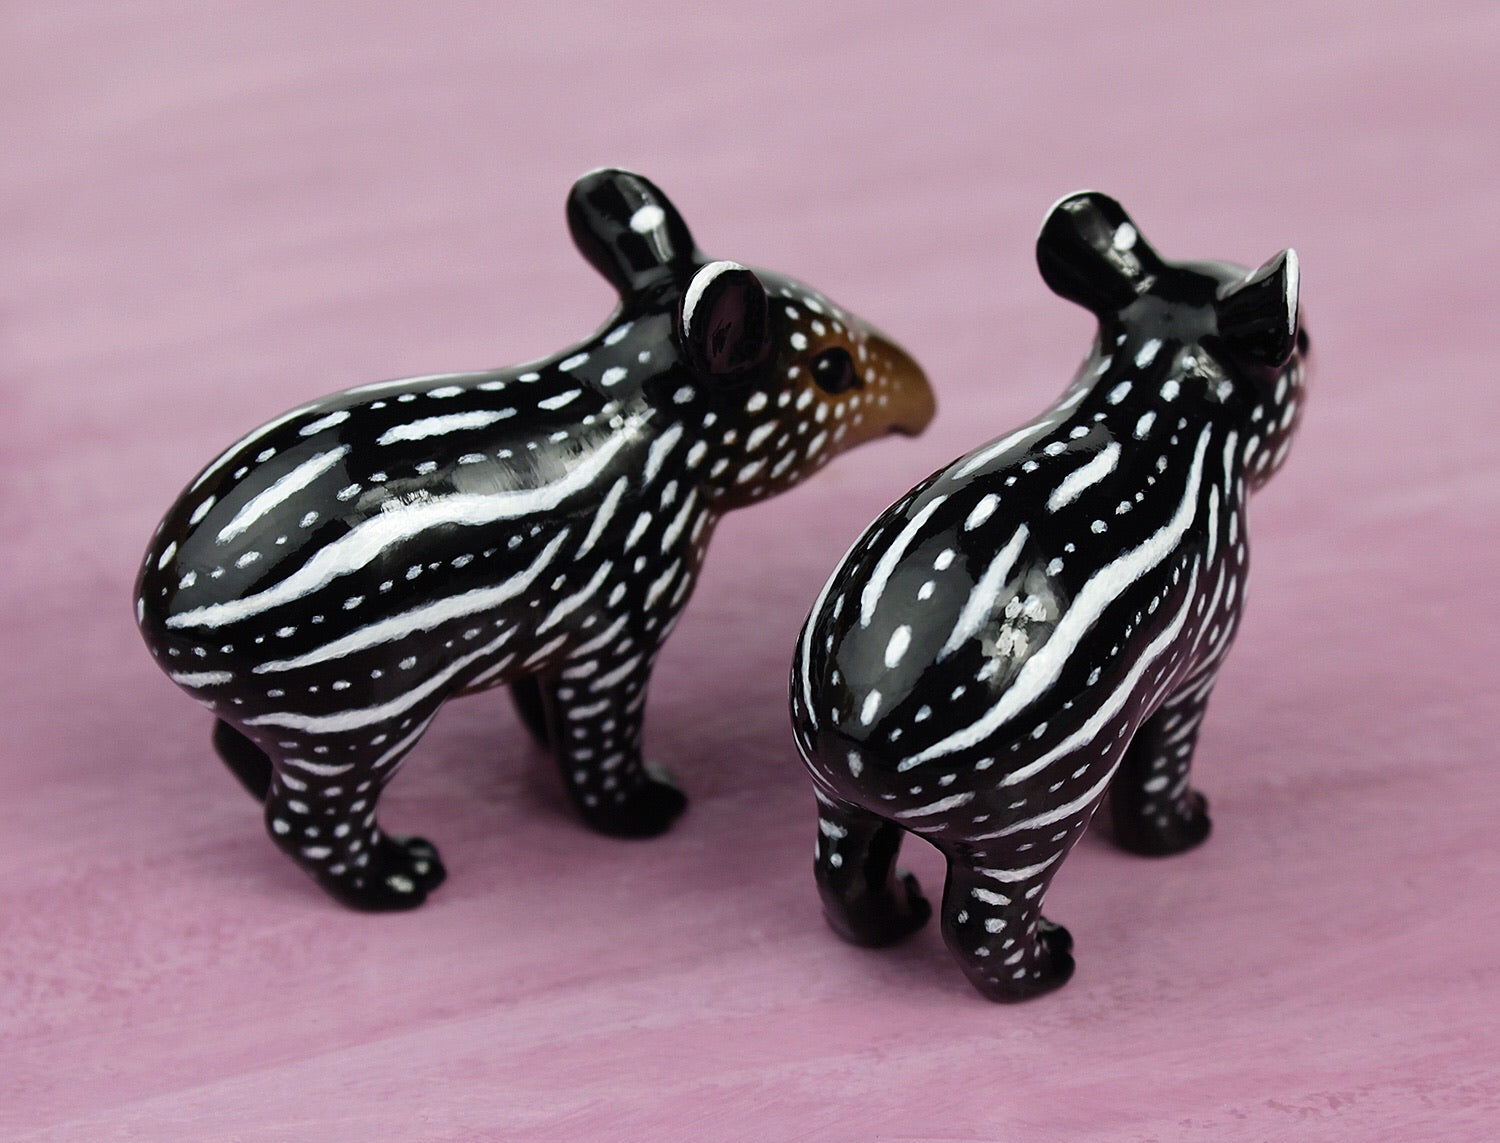 tapir figurine